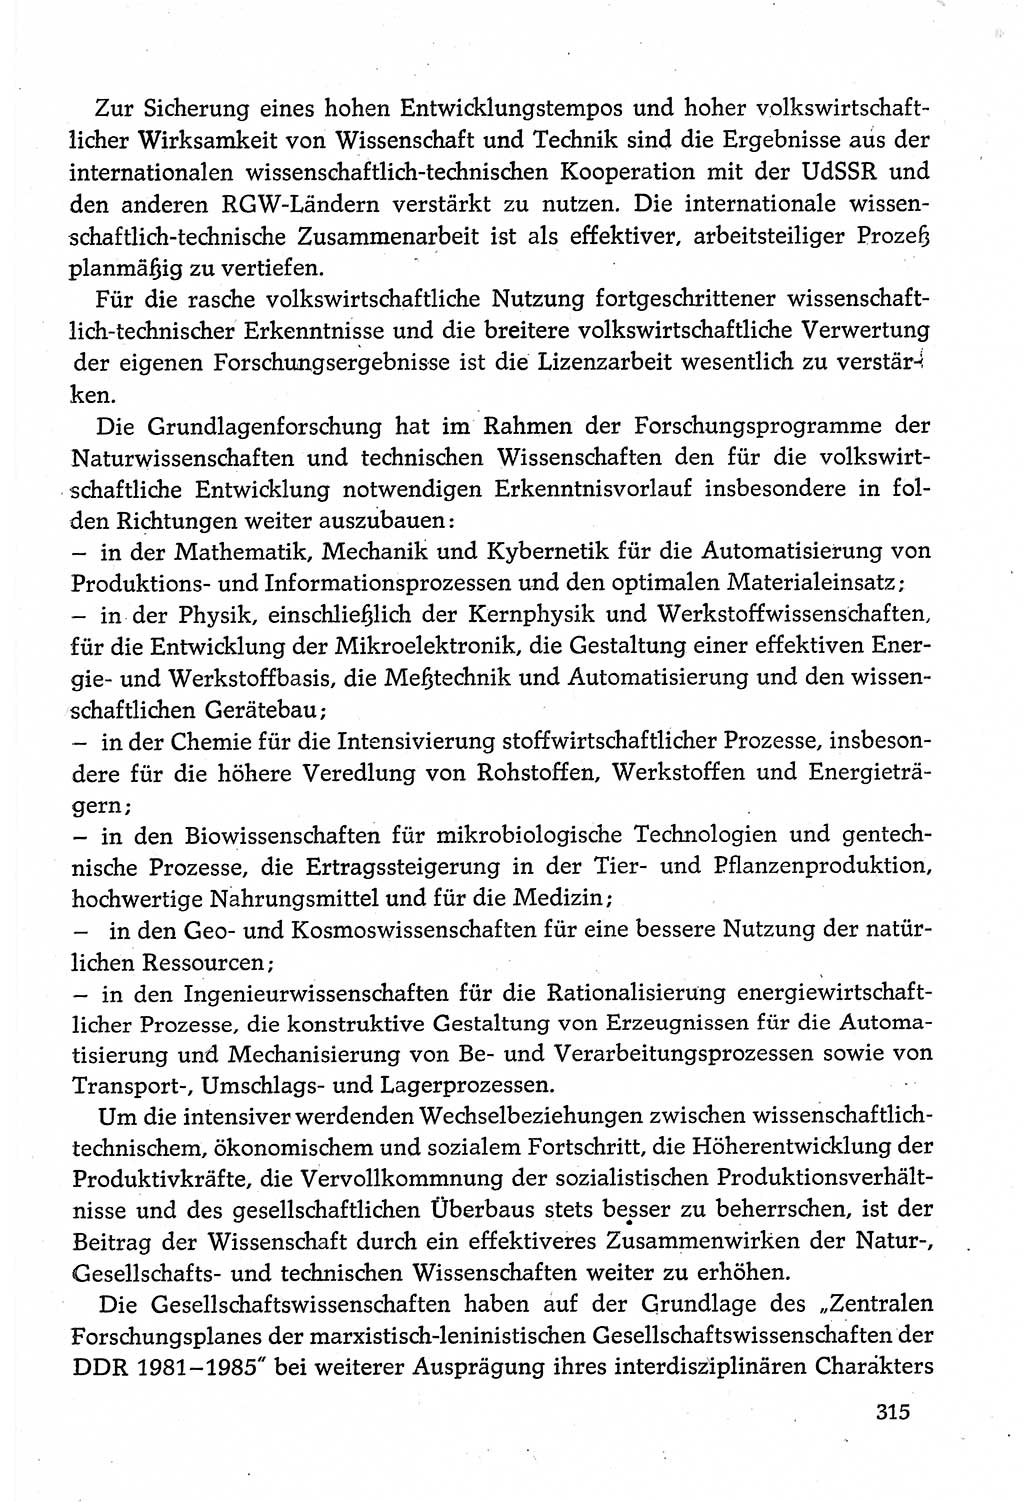 Dokumente der Sozialistischen Einheitspartei Deutschlands (SED) [Deutsche Demokratische Republik (DDR)] 1980-1981, Seite 315 (Dok. SED DDR 1980-1981, S. 315)